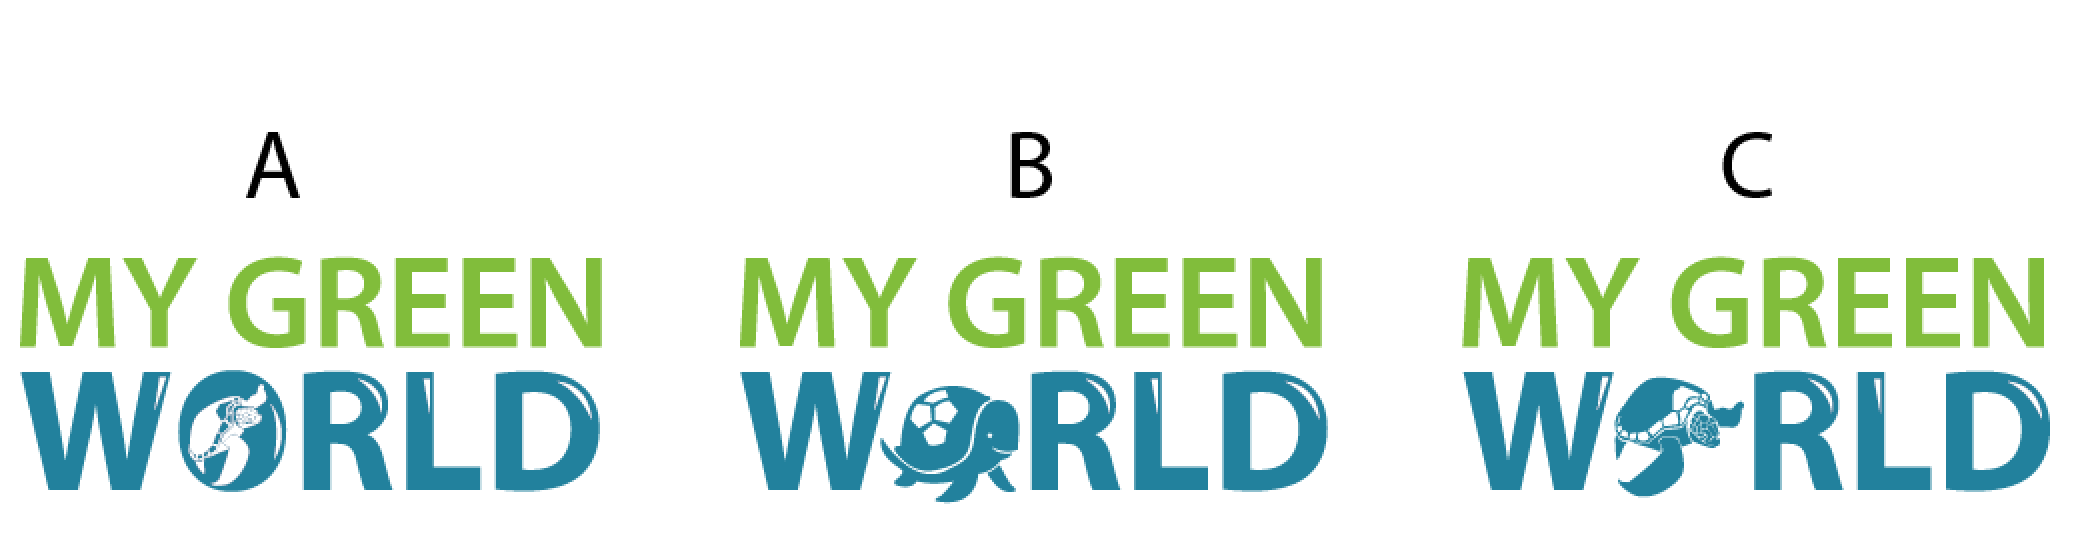 Green World Logo - My Green World LOGO